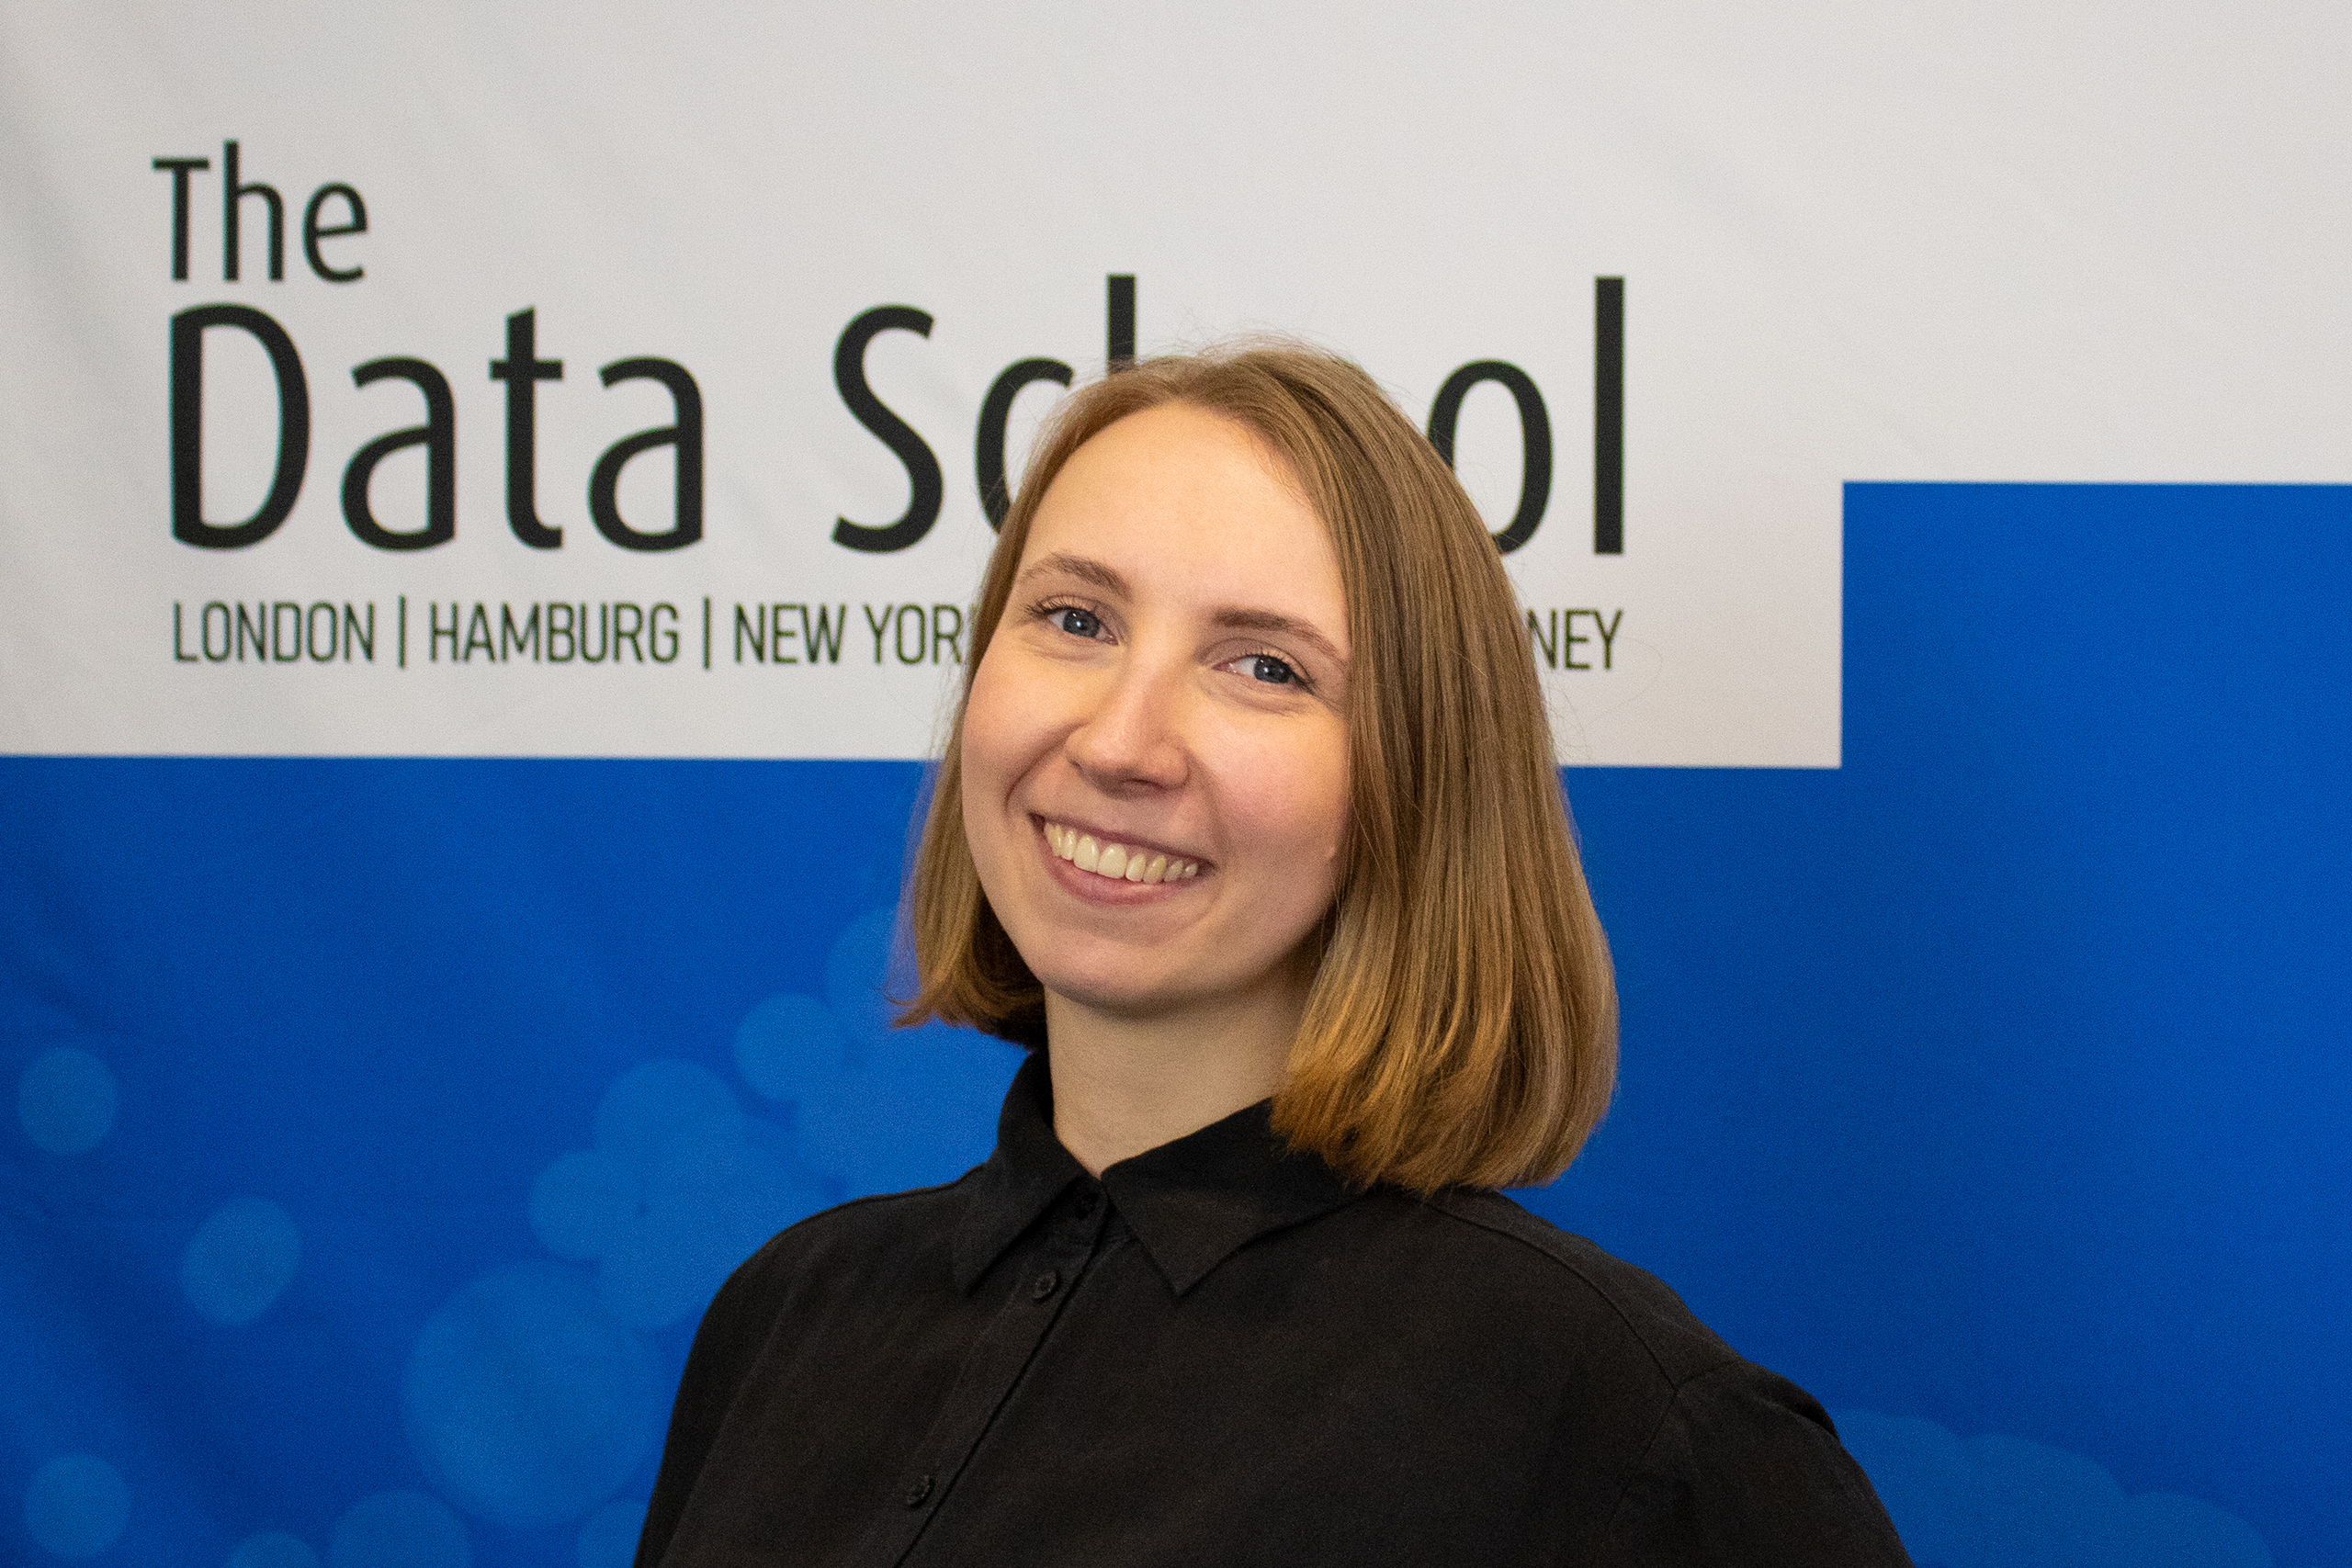 Lernen Sie unsere neuen Data Schooler kennen! 5 Fragen an Tanya Fischer